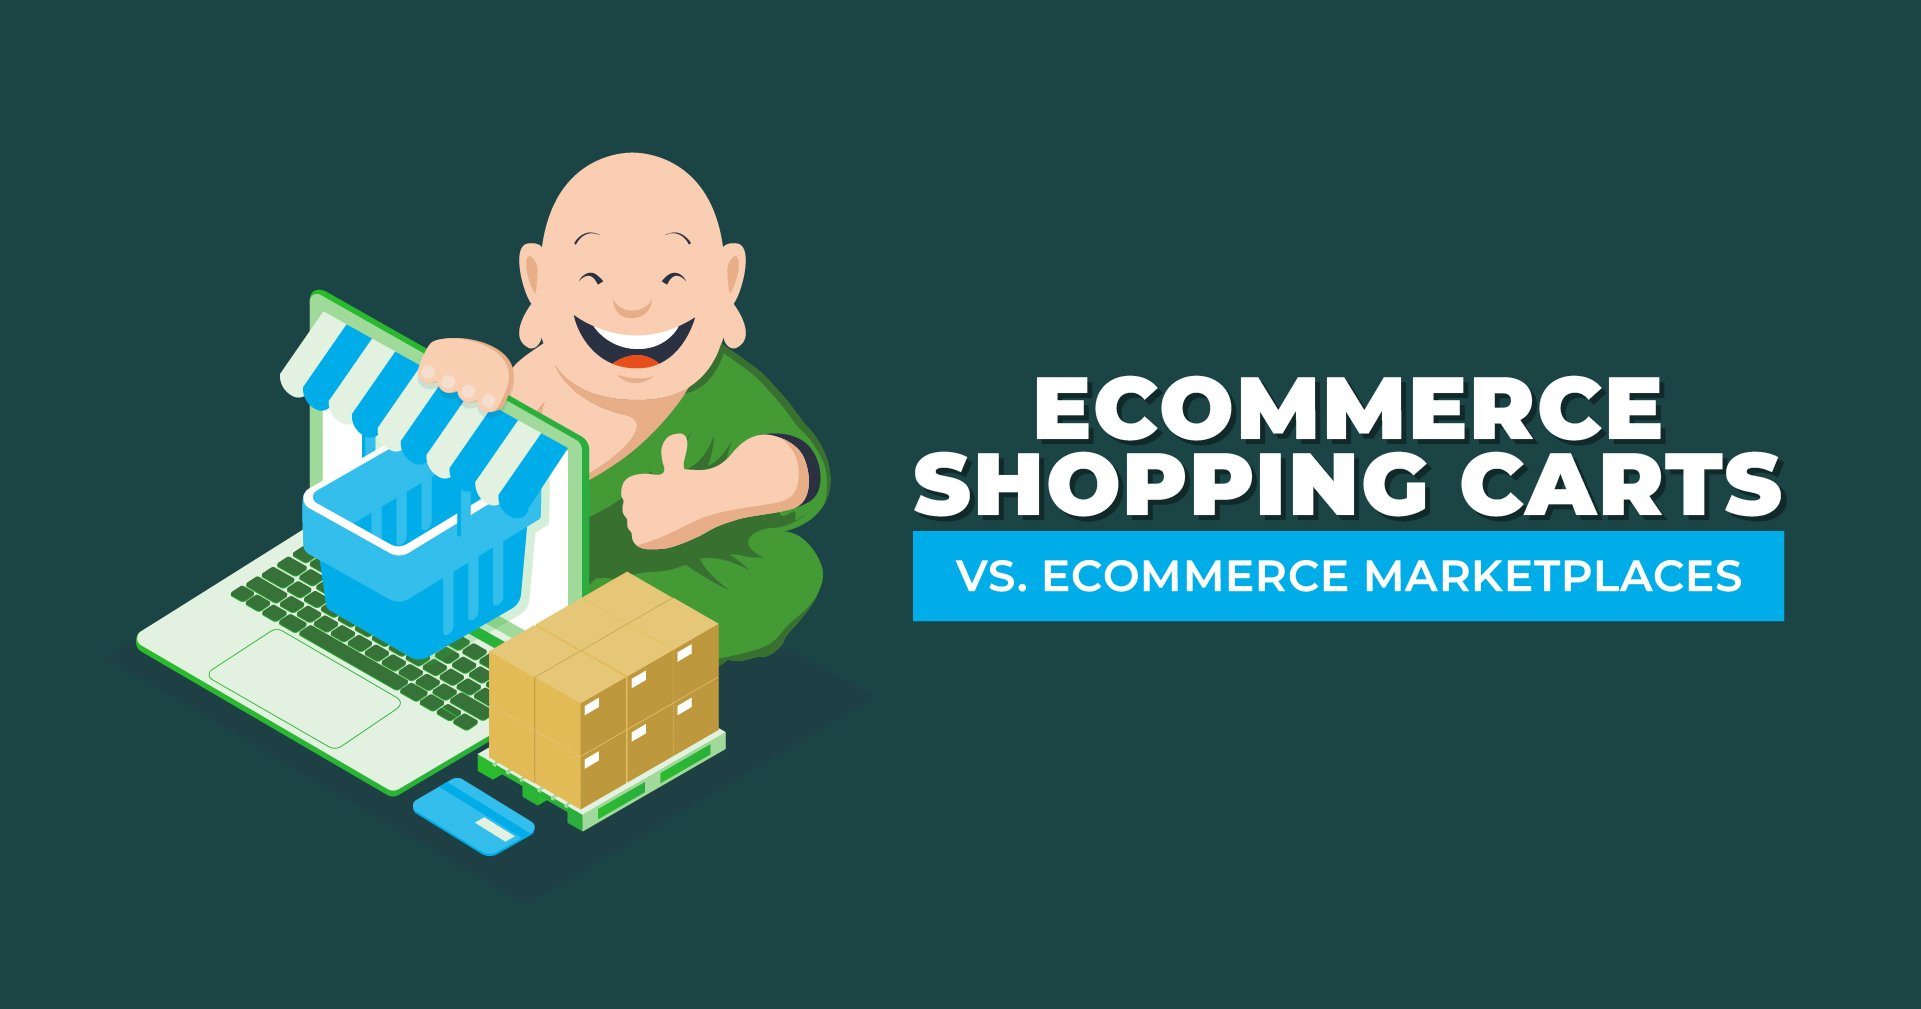 Ecommerce Shopping Carts vs. Ecommerce Marketplaces